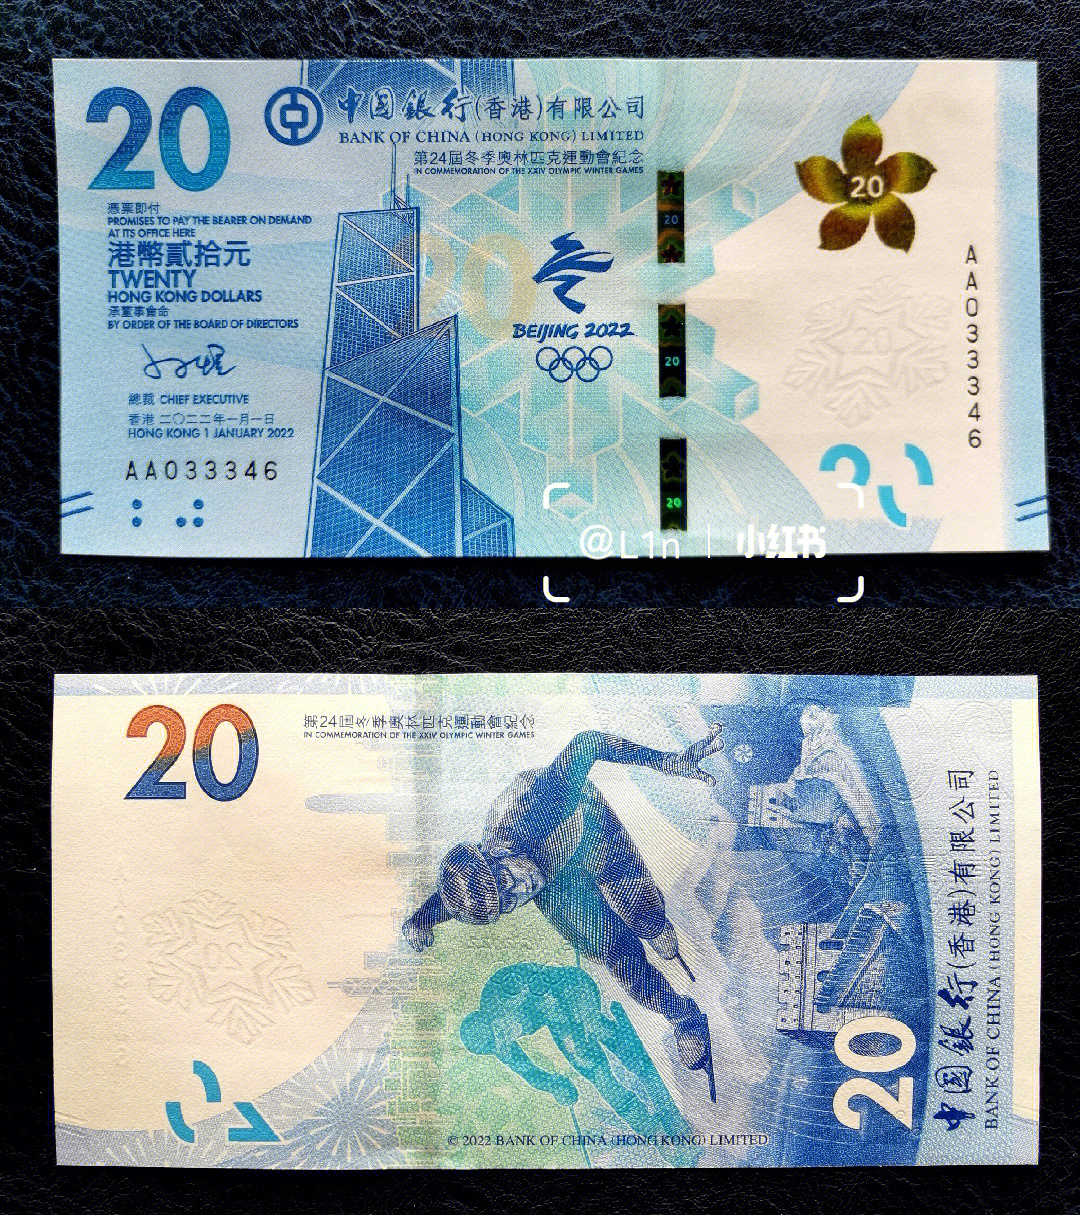 12日(原定于1月23日)特别发行港币20元面值的北京2022年冬奥会纪念钞